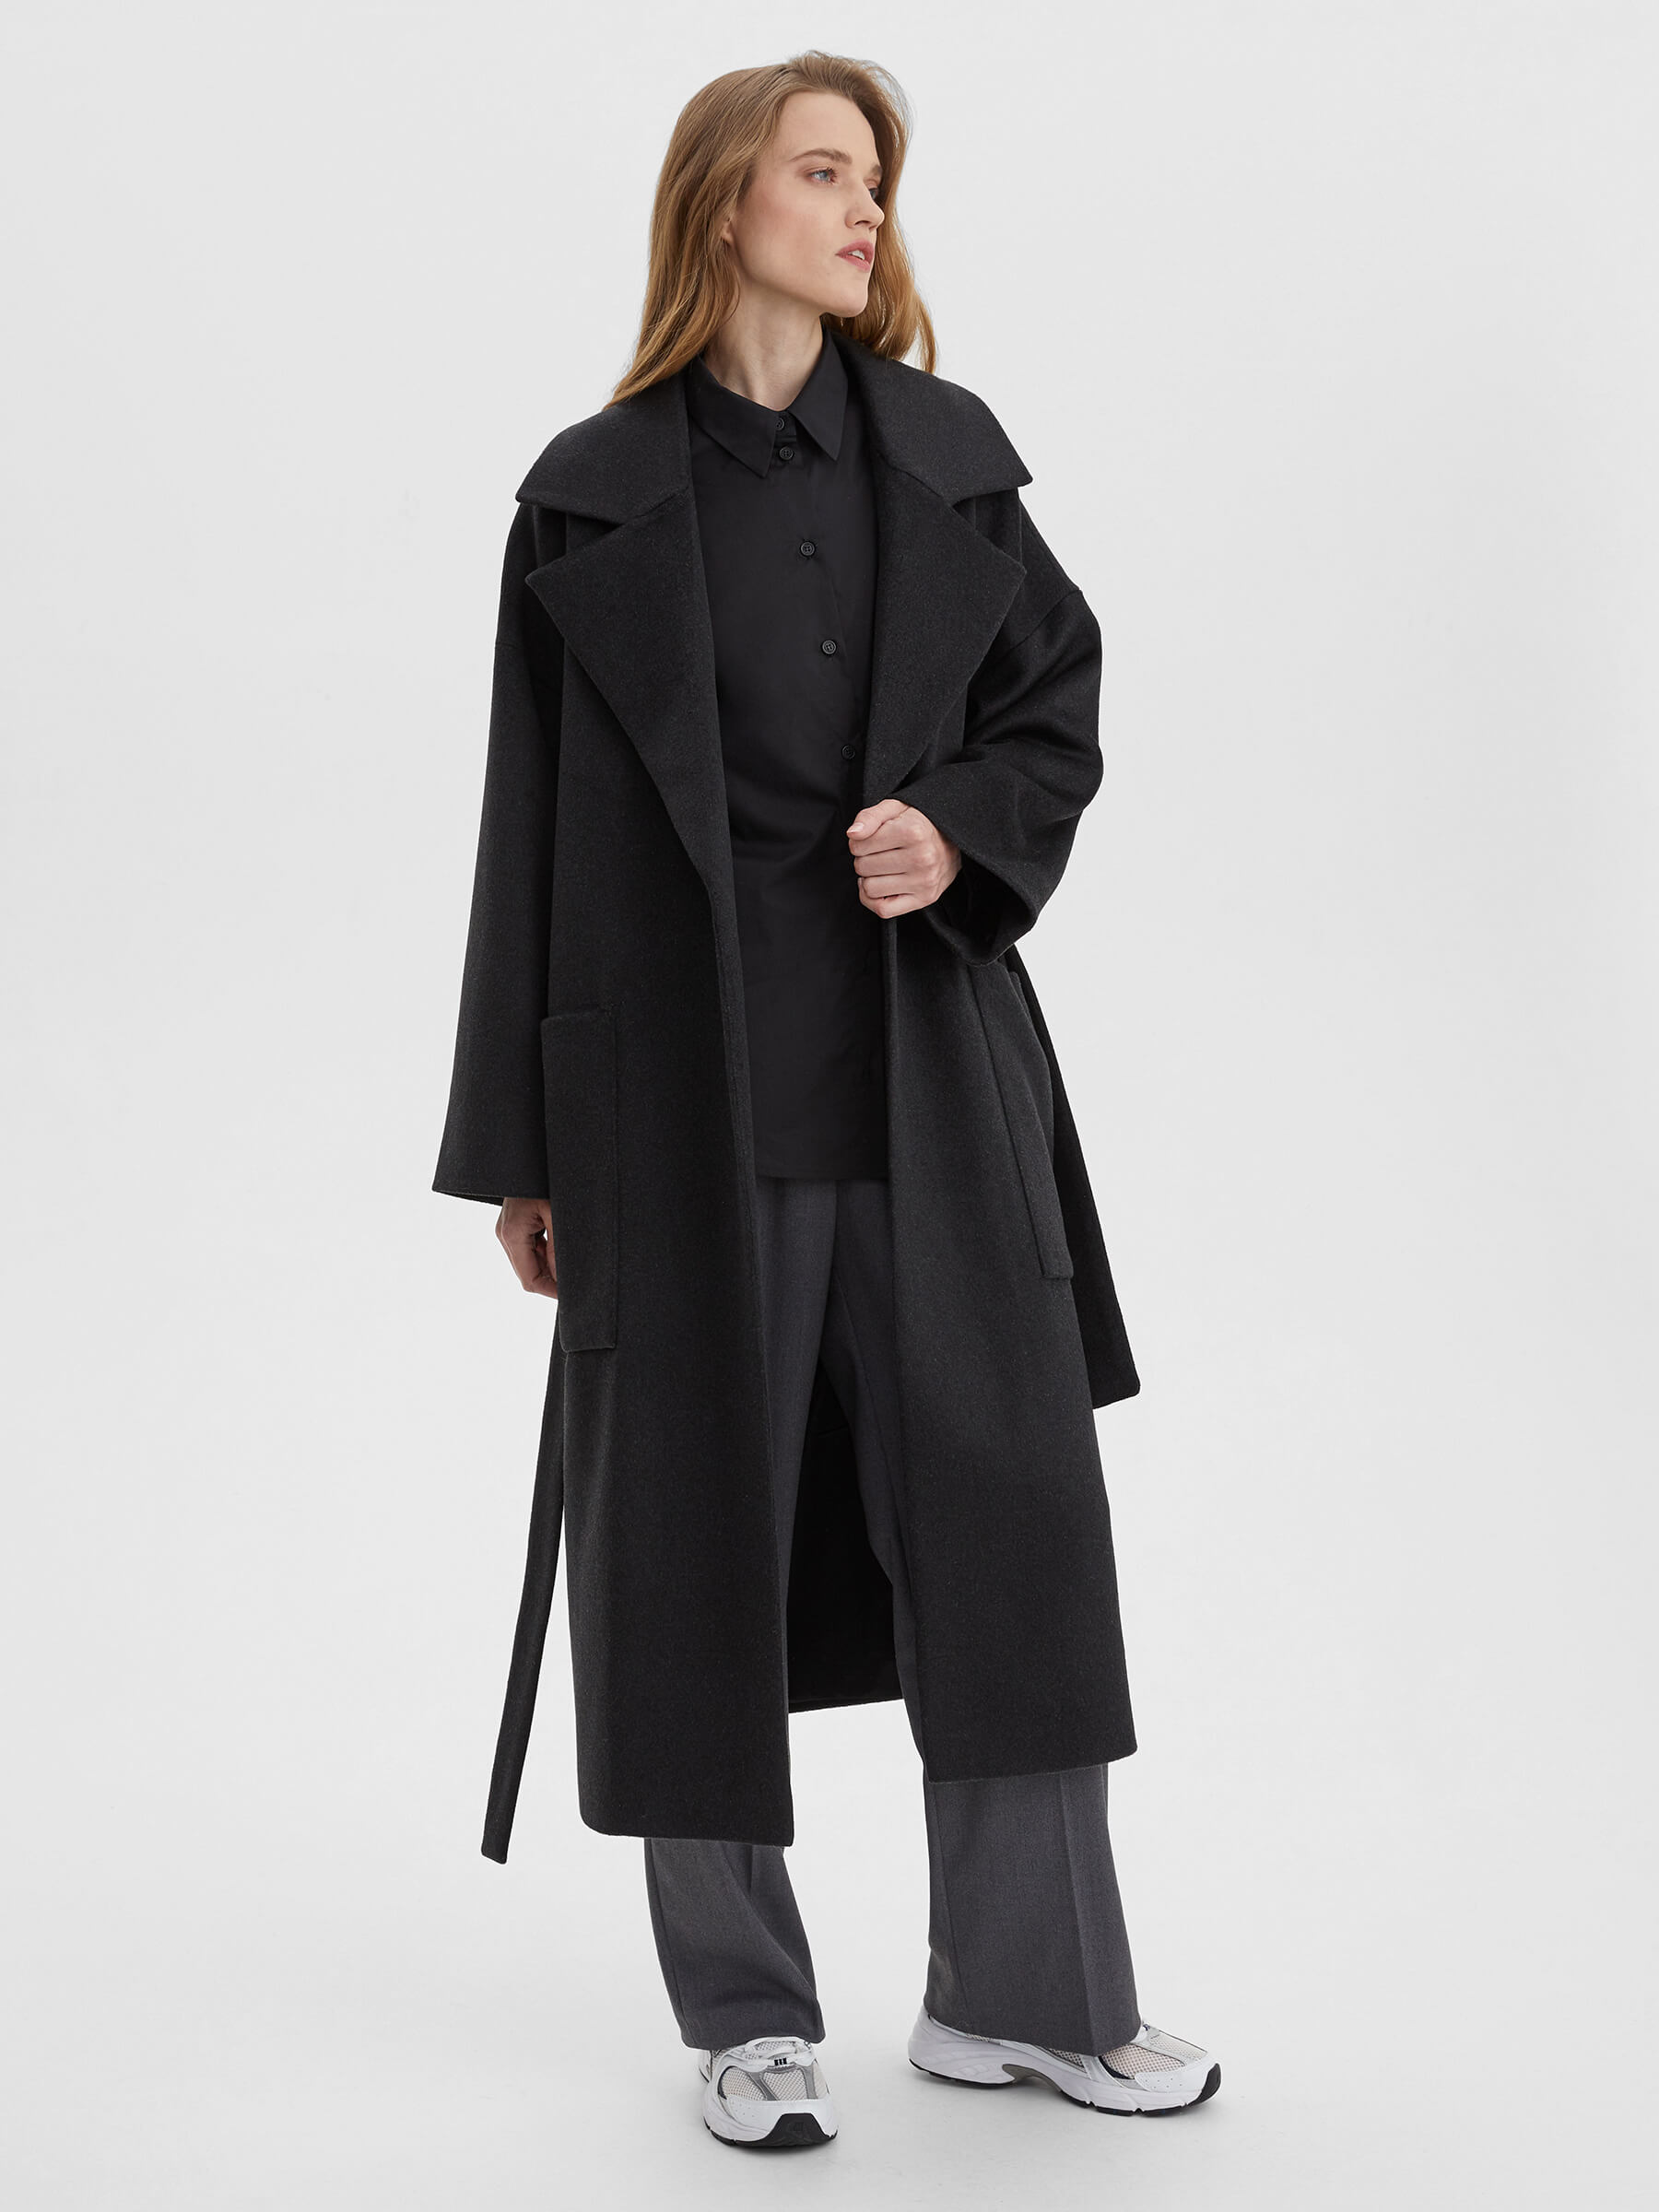 пальто женское длинное с объемными карманами и поясом цвет – молочный Пальто женское длинное с объемными карманами и поясом, цвет – антрацит